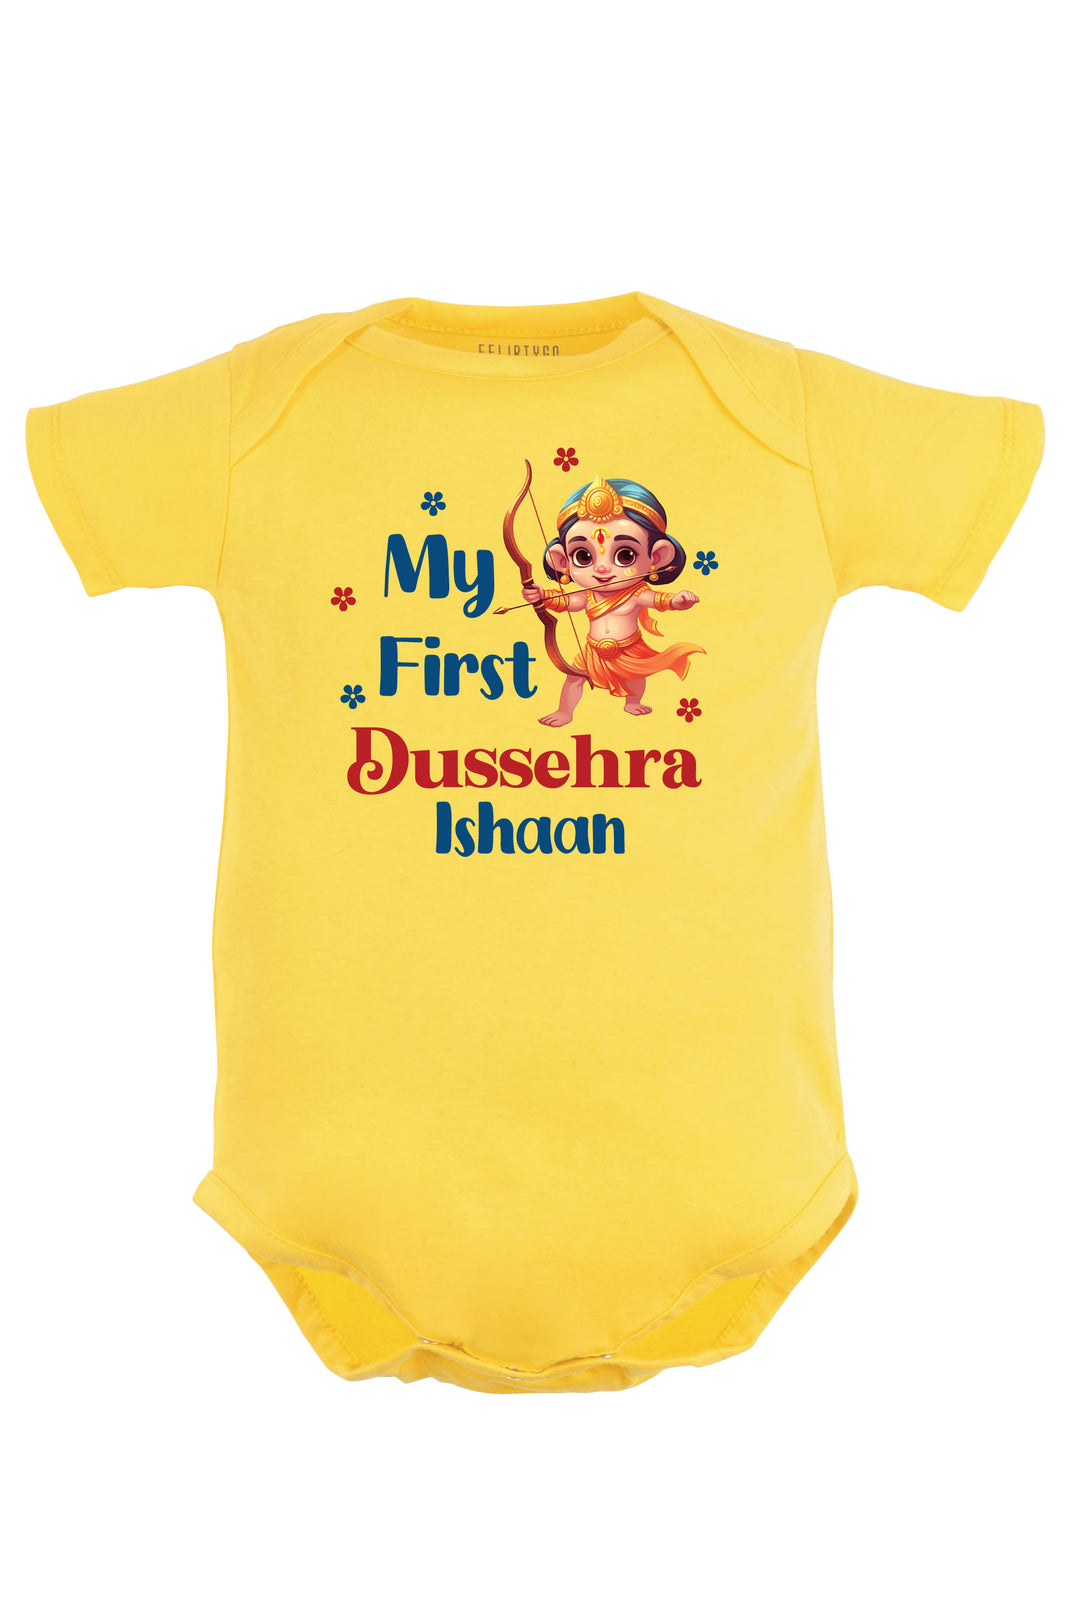 My First Dussehra Baby Romper | Onesies w/ Custom Name